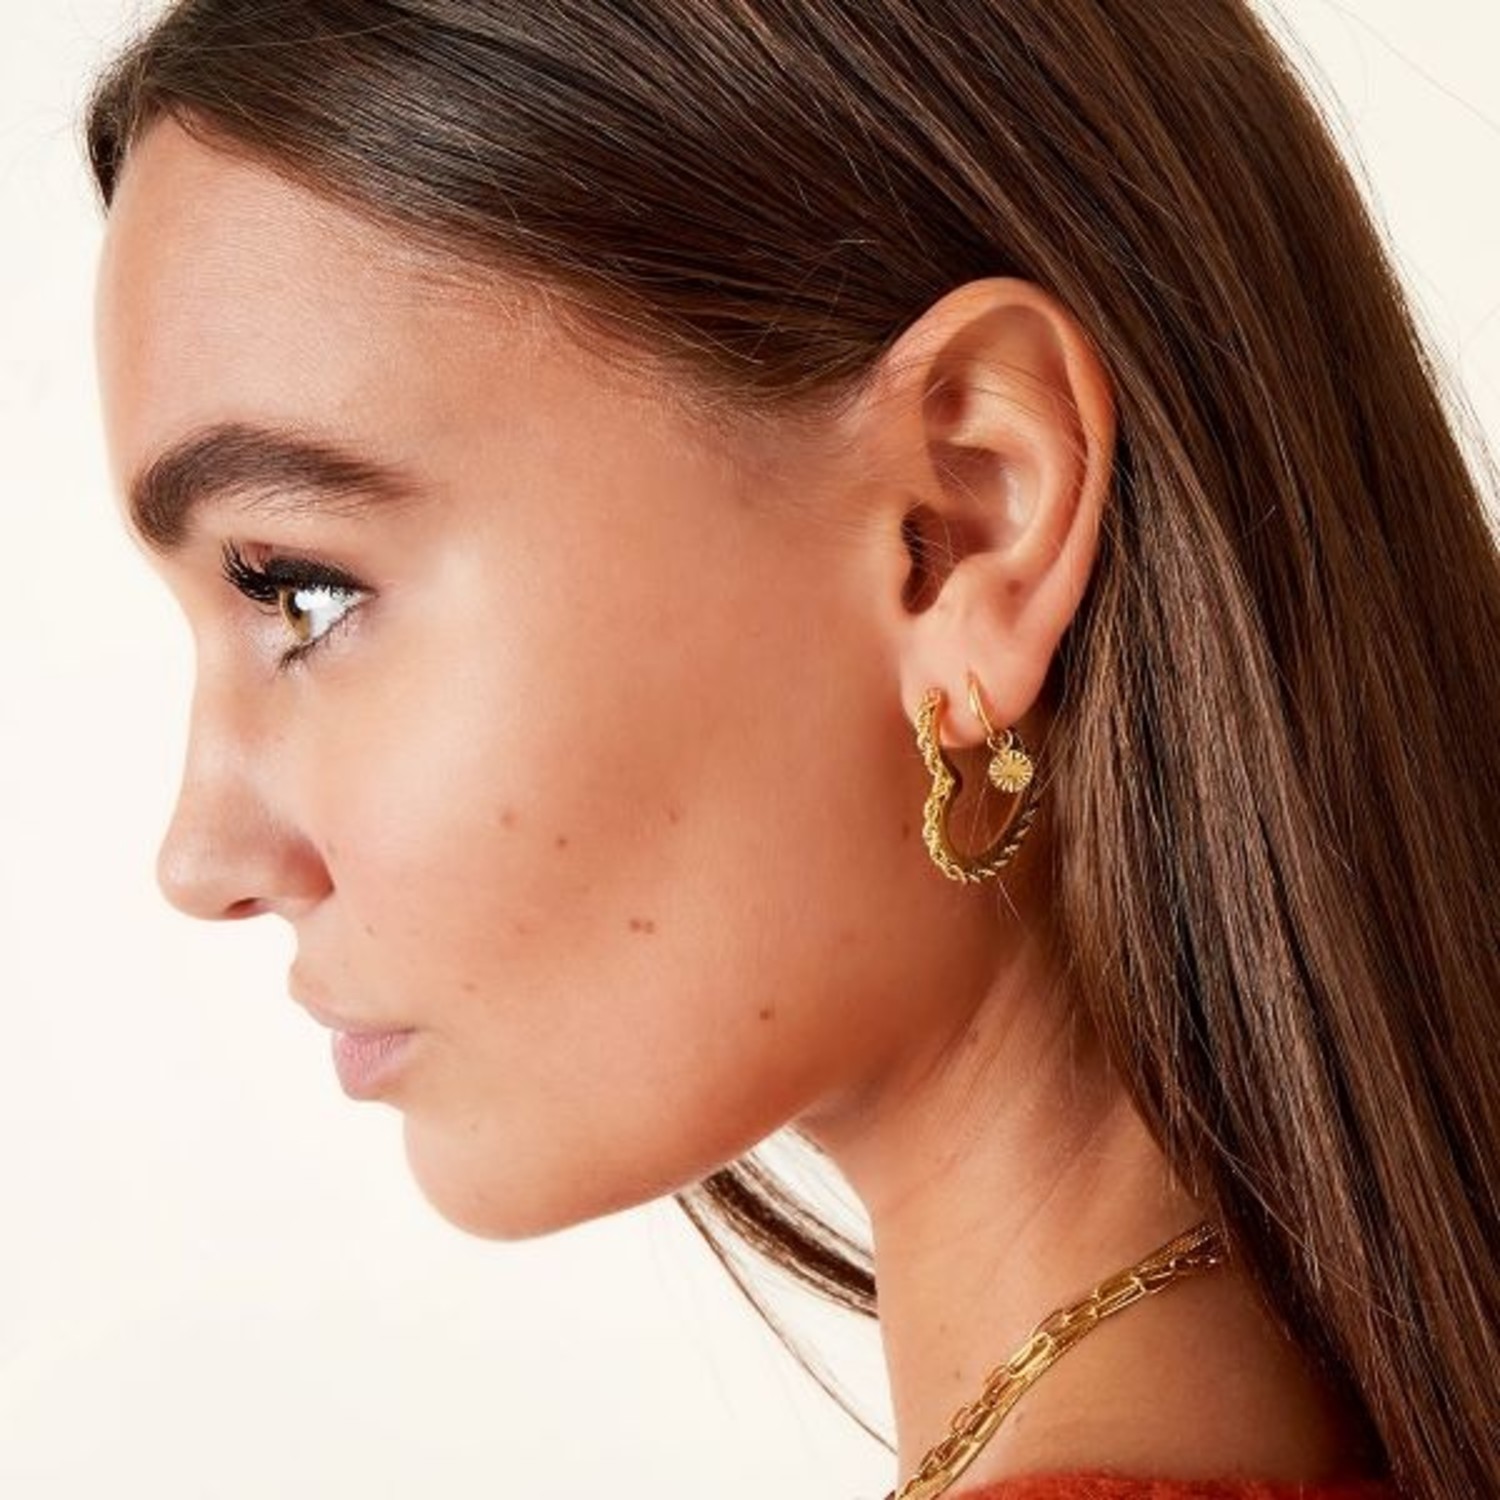 Buy Silver-Toned Earrings for Women by Studio One Love Online | Ajio.com